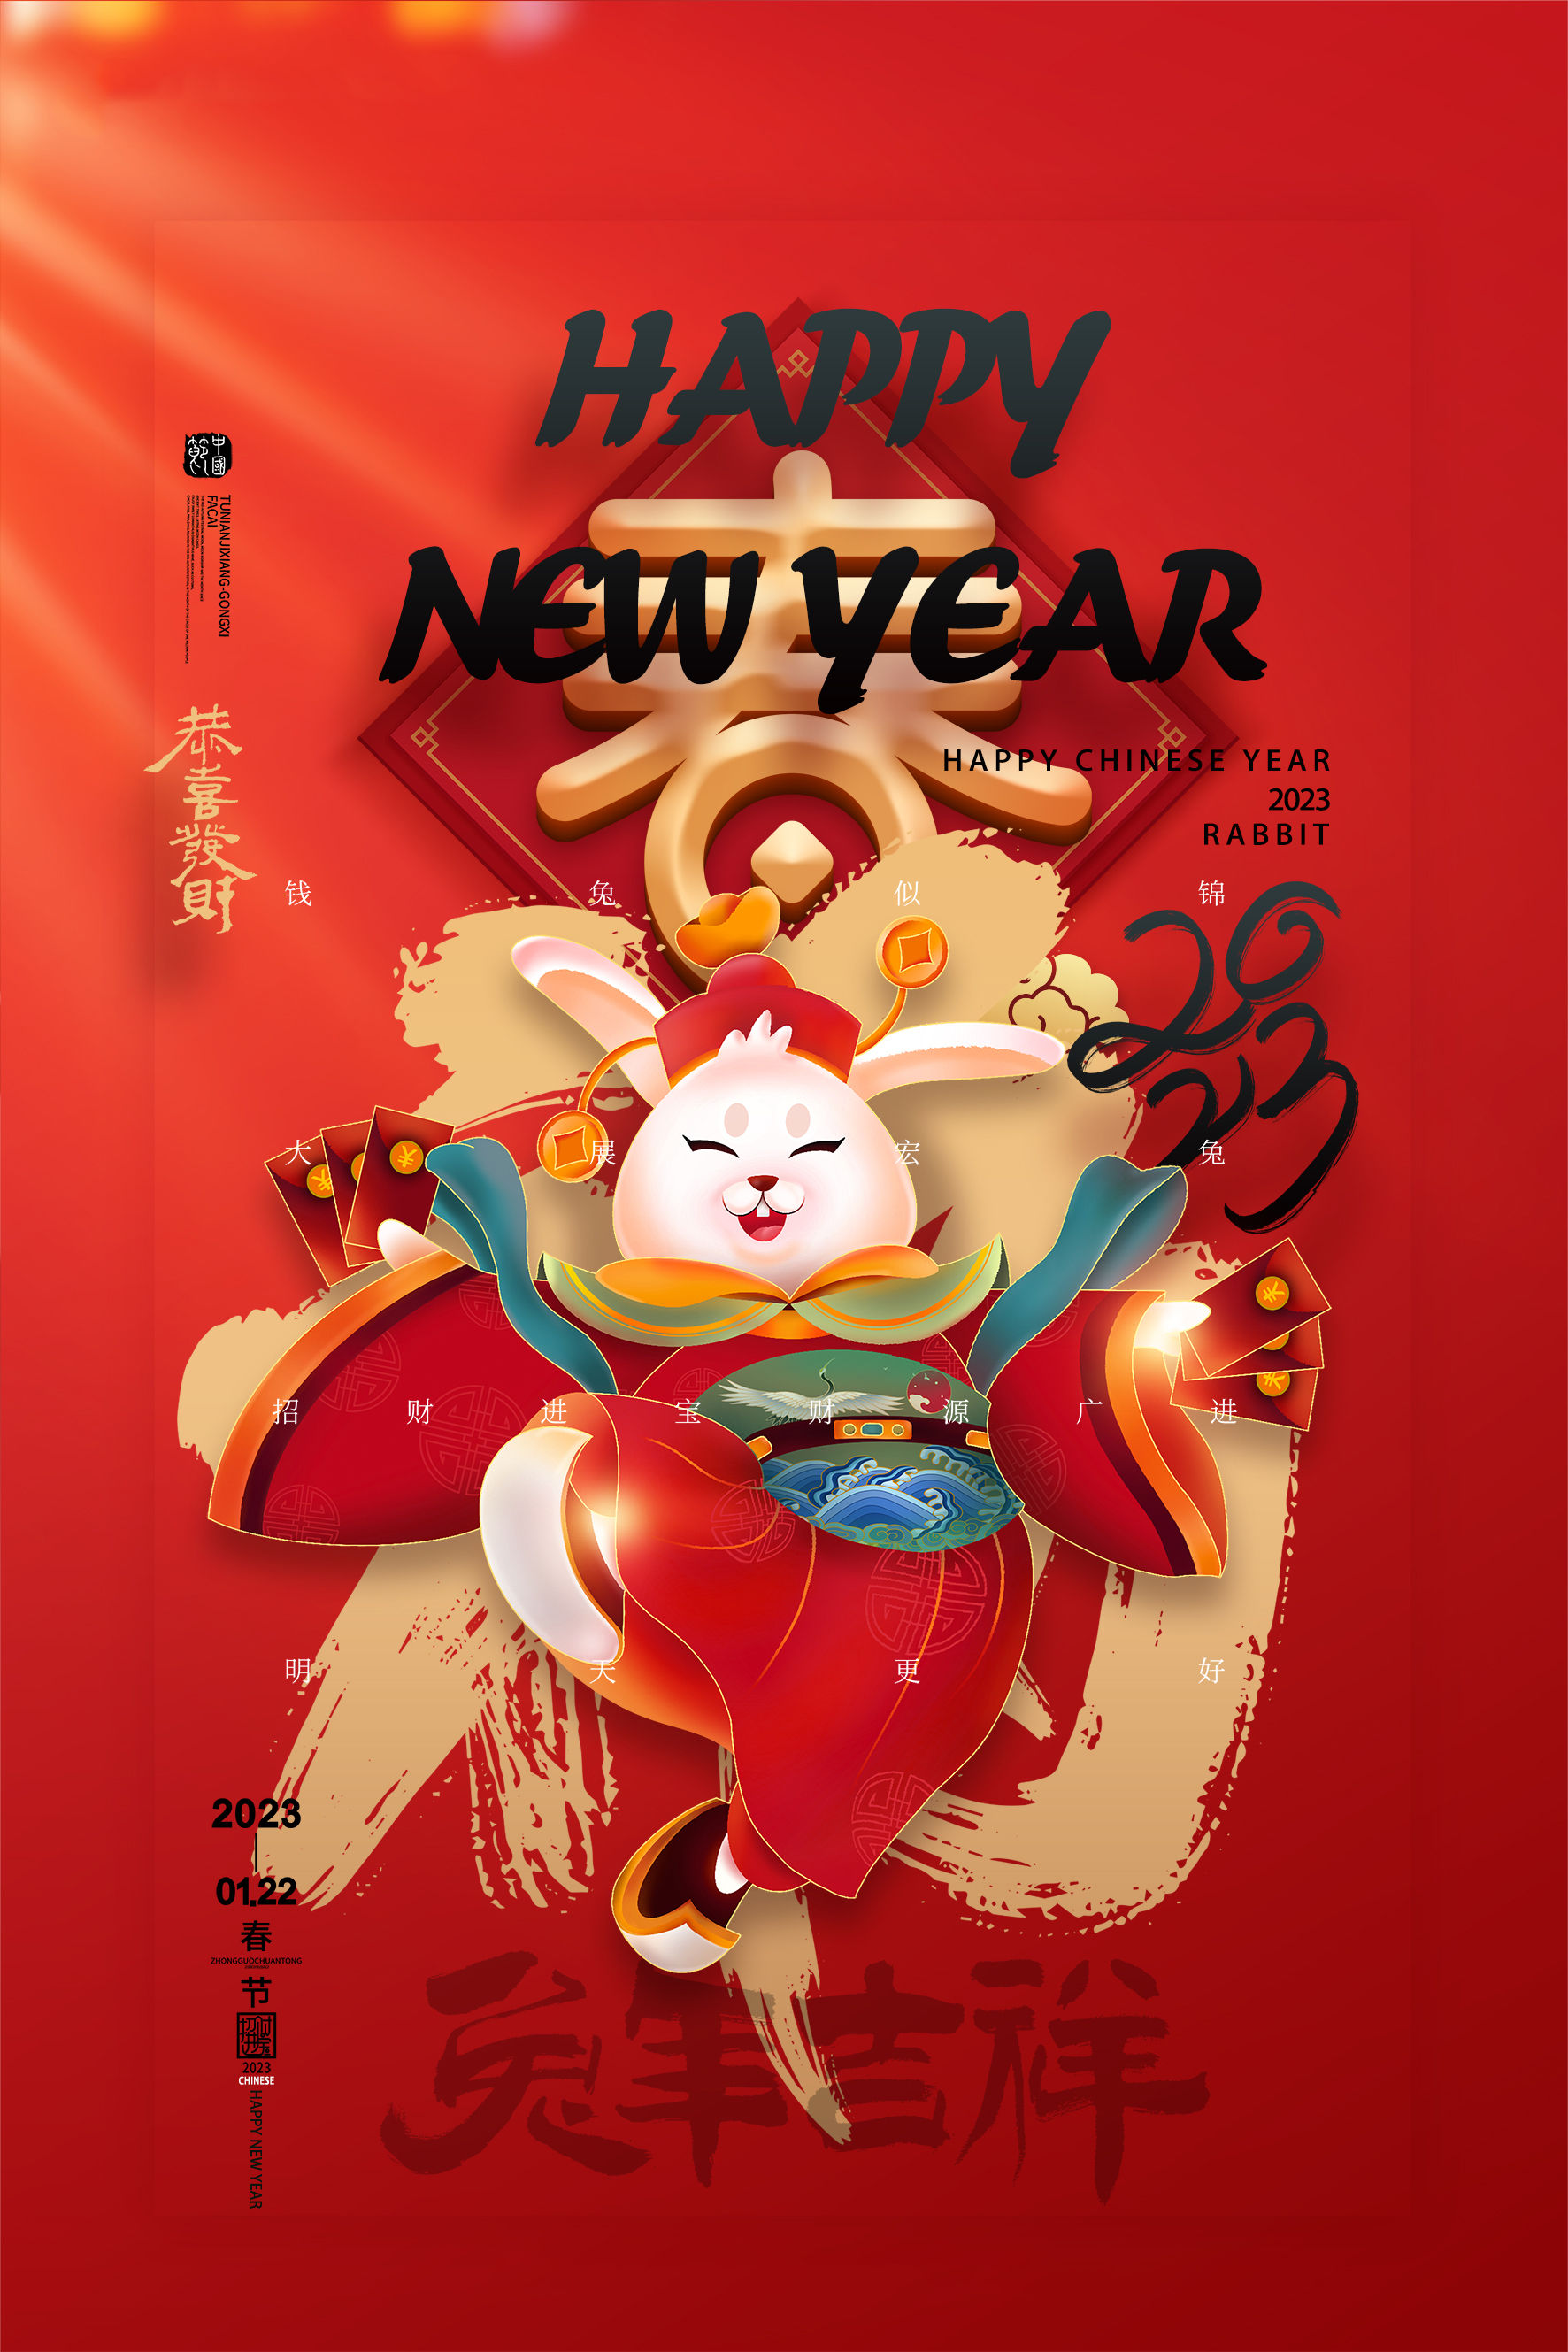 Avviso per le festività del Capodanno cinese